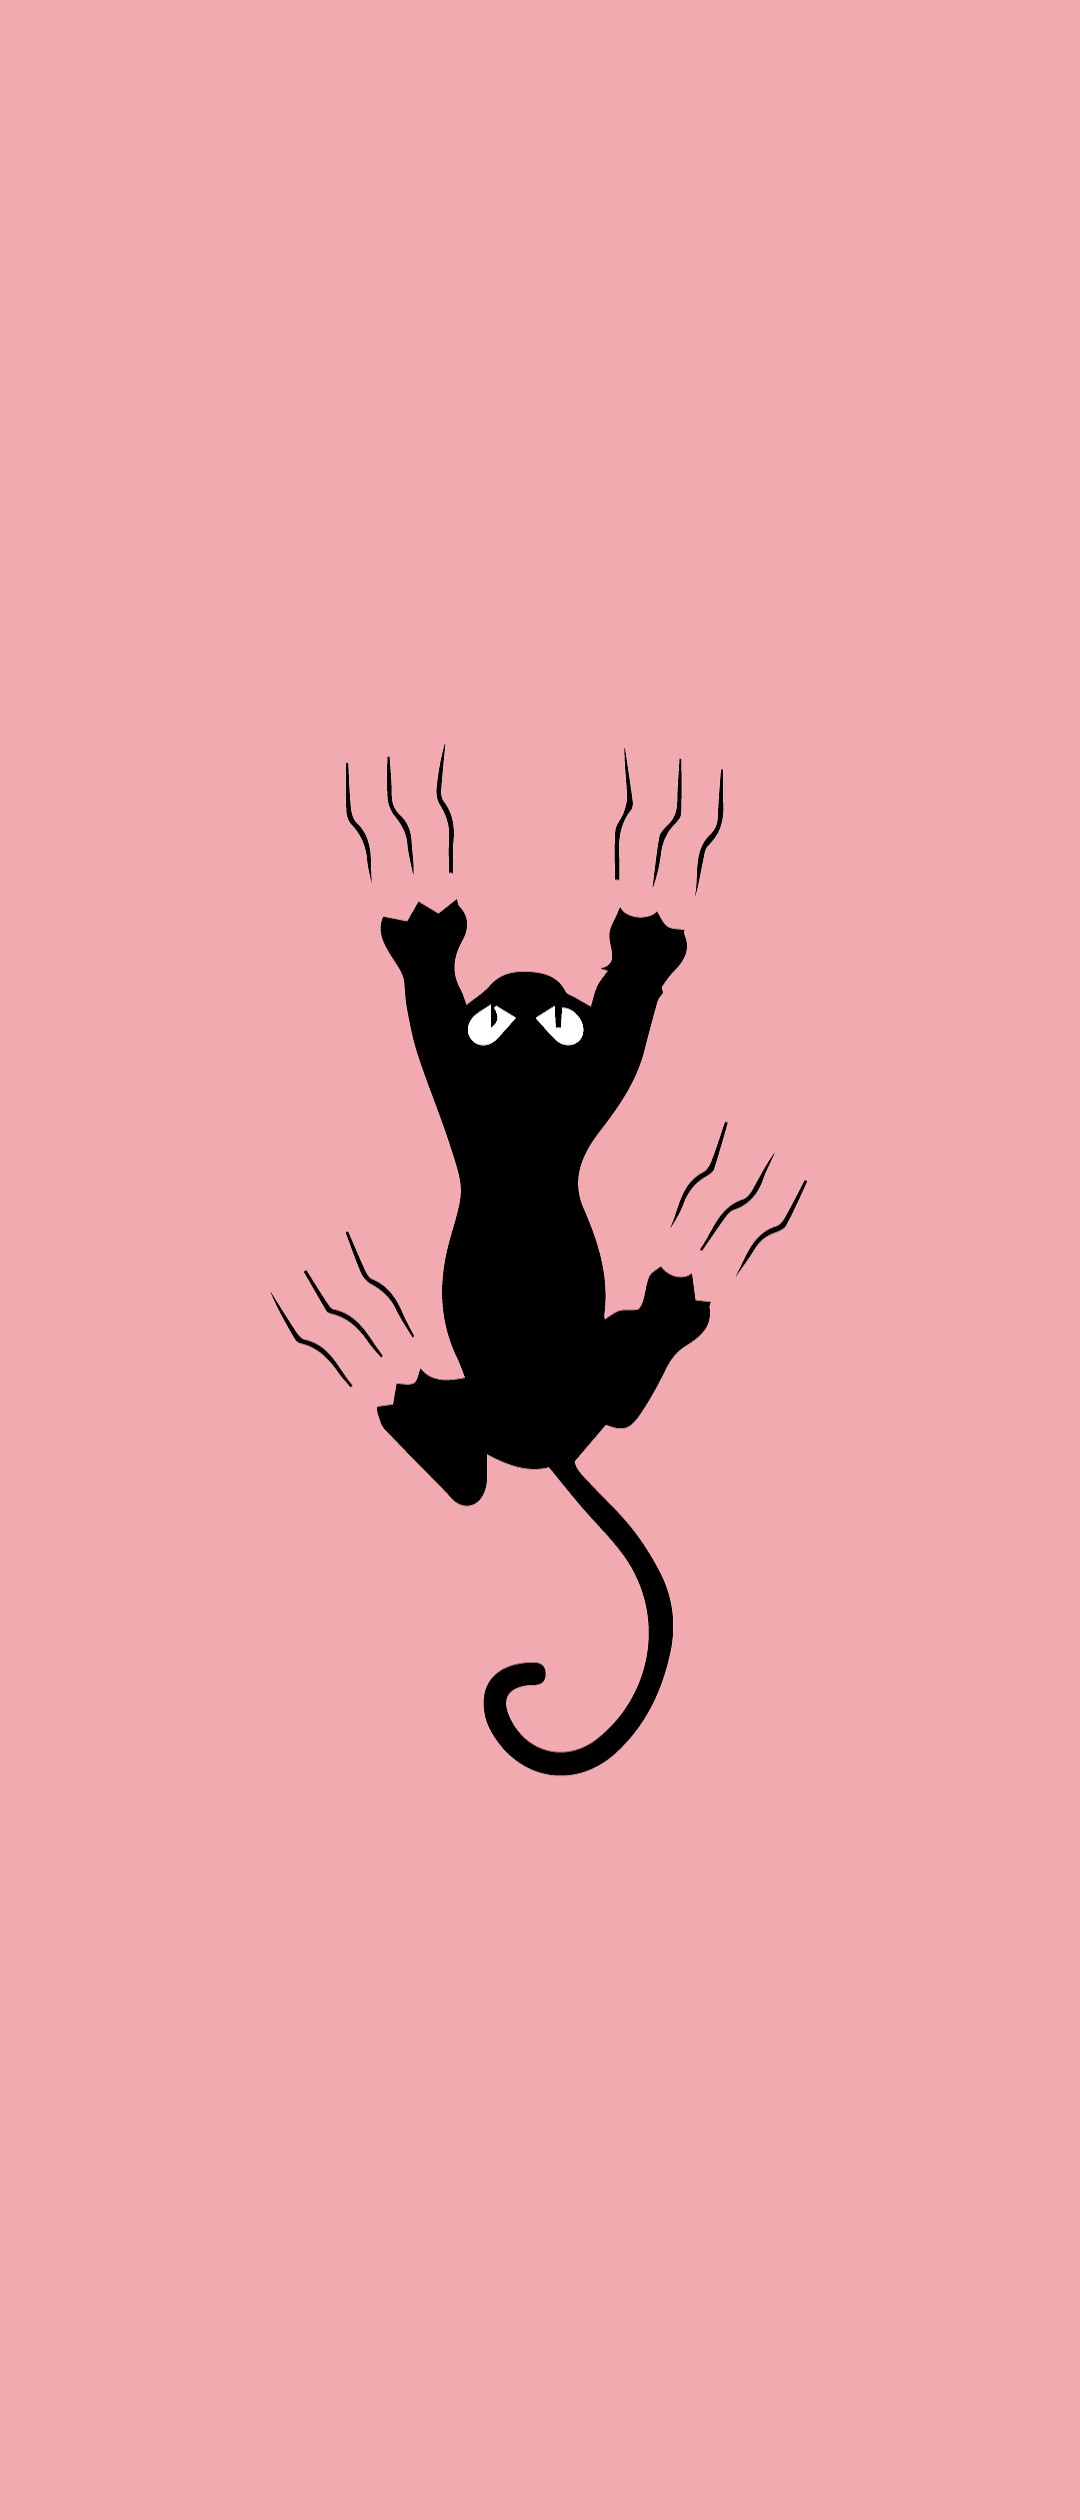 黒猫パターン柄の壁紙イラストのフリー素材 イラストイメージ ピンクの背景に黒猫 Ciudaddelmaizslp Gob Mx